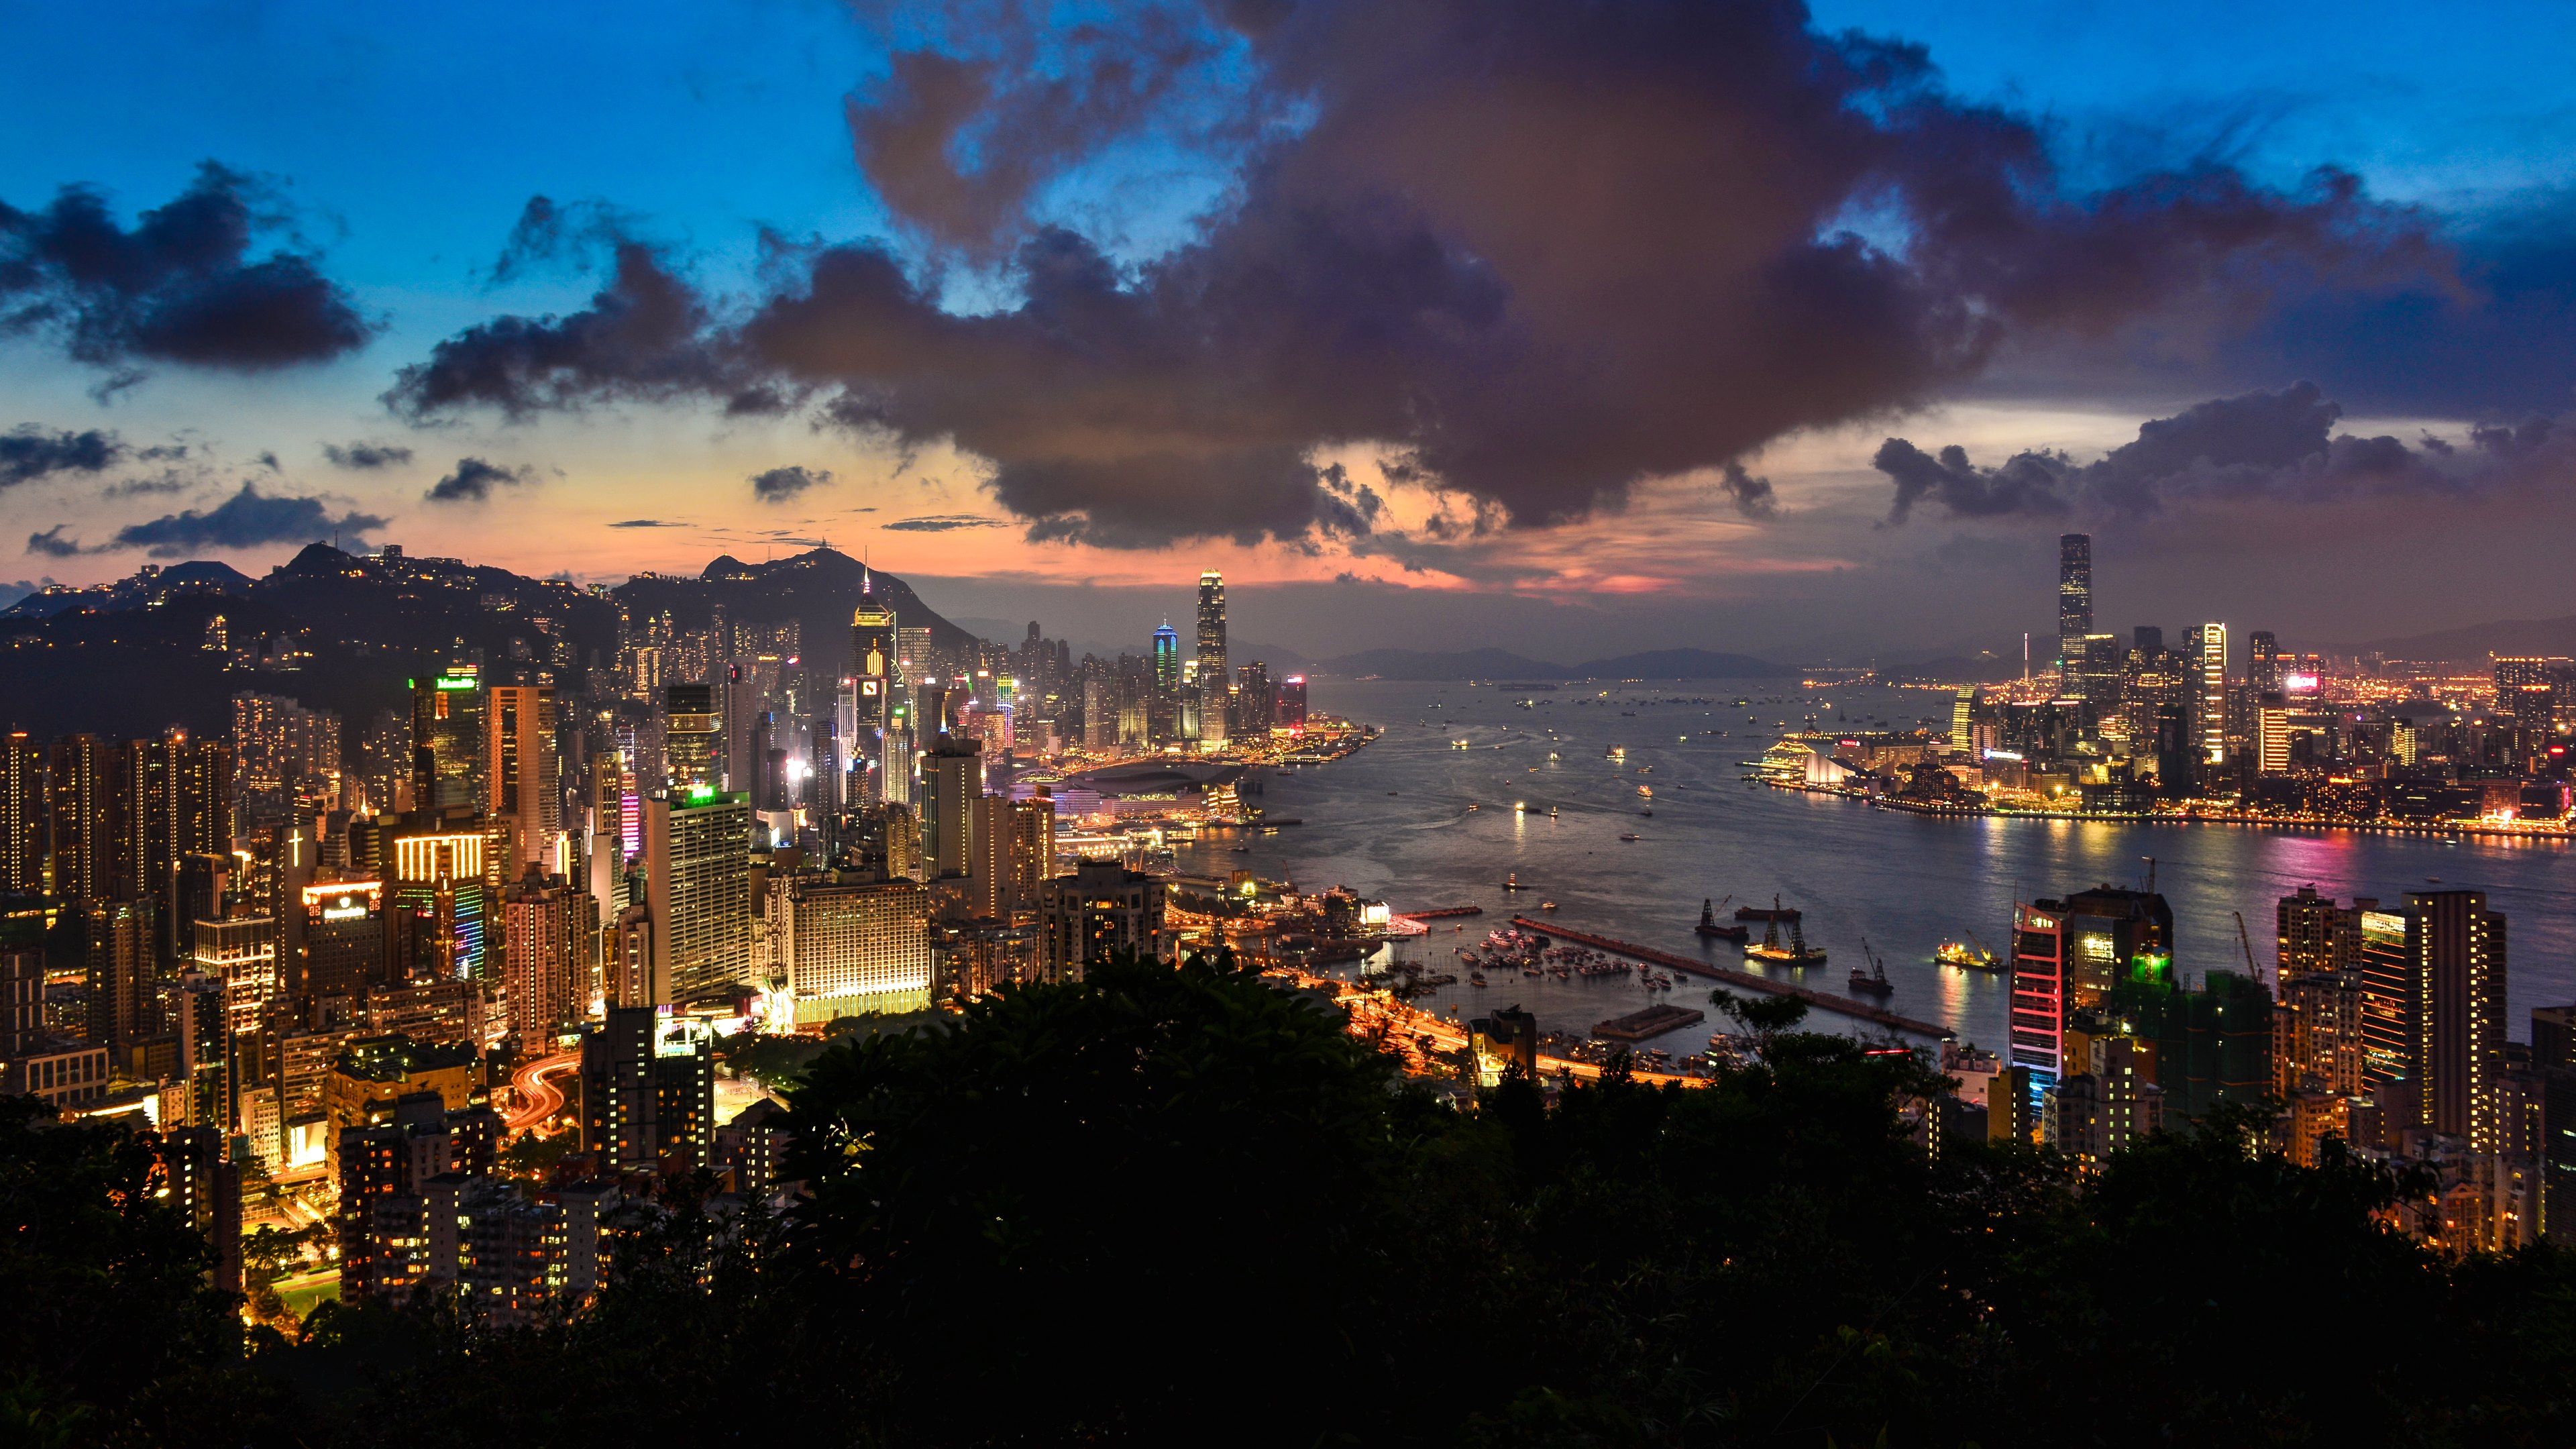 Hong Kong 4k Ultra HD Wallpaper. Background Imagex2160